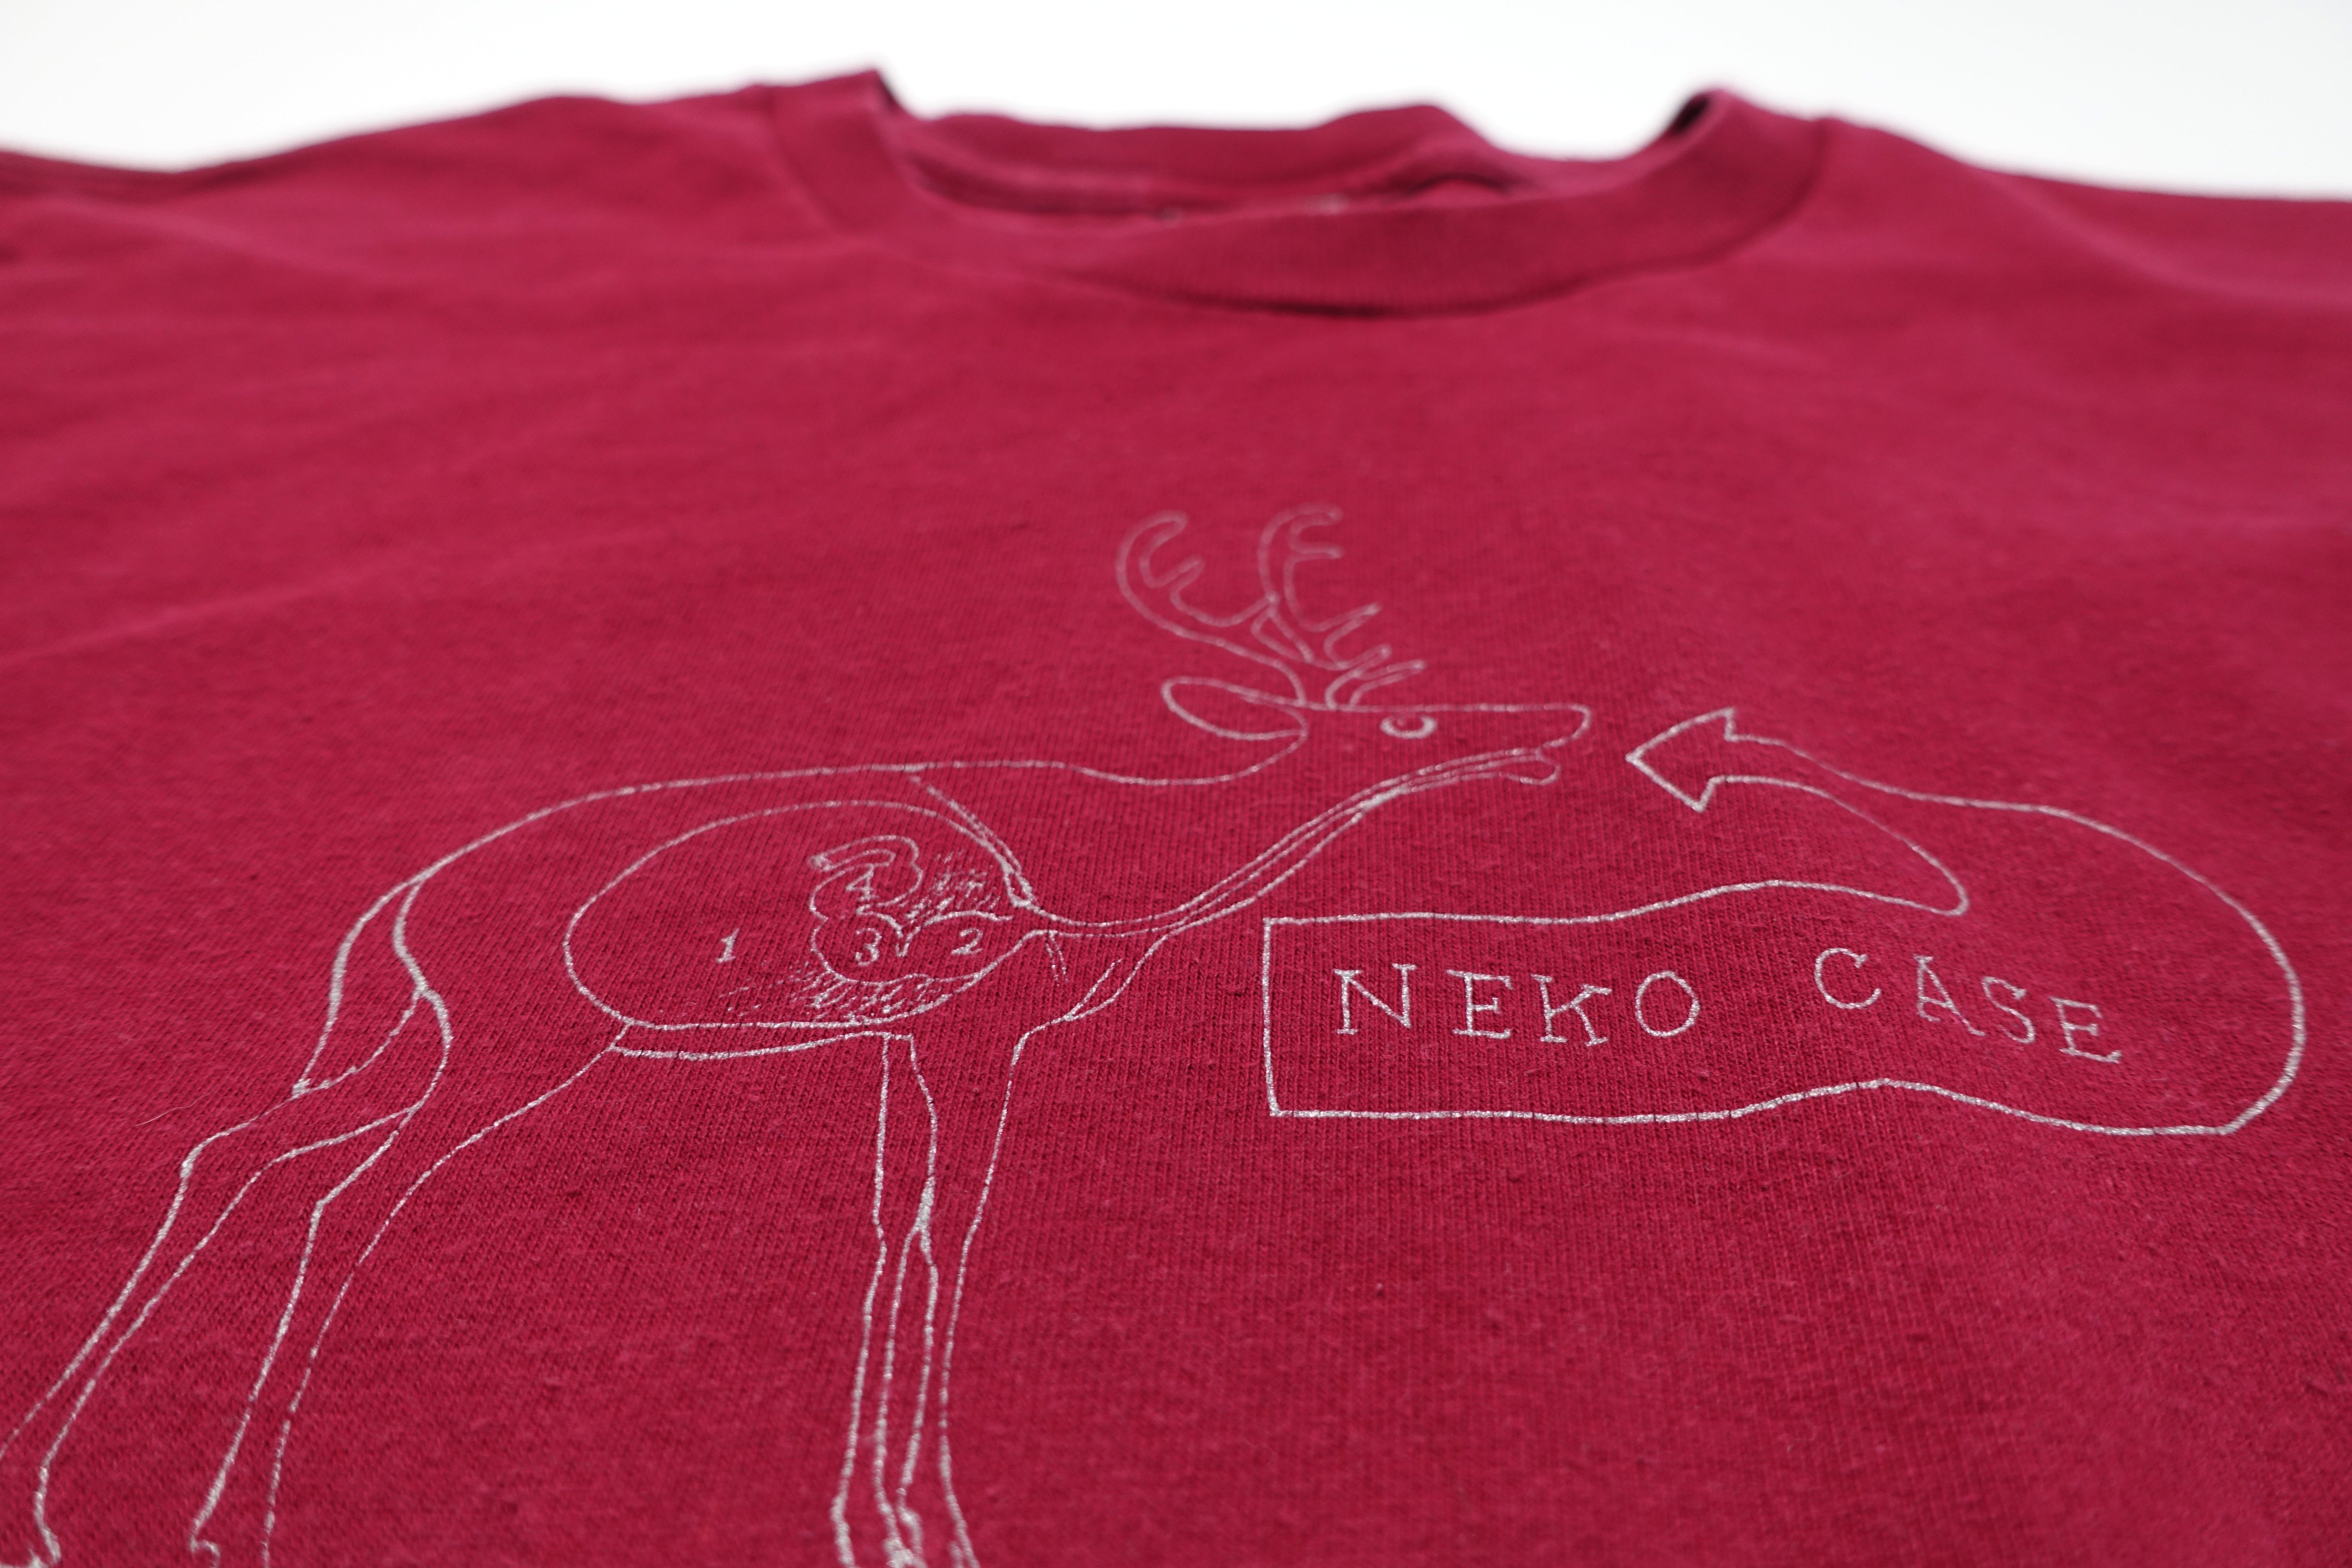 Neko Case ‎– The Tigers Have Spoken 2004 Tour Shirt Size Large